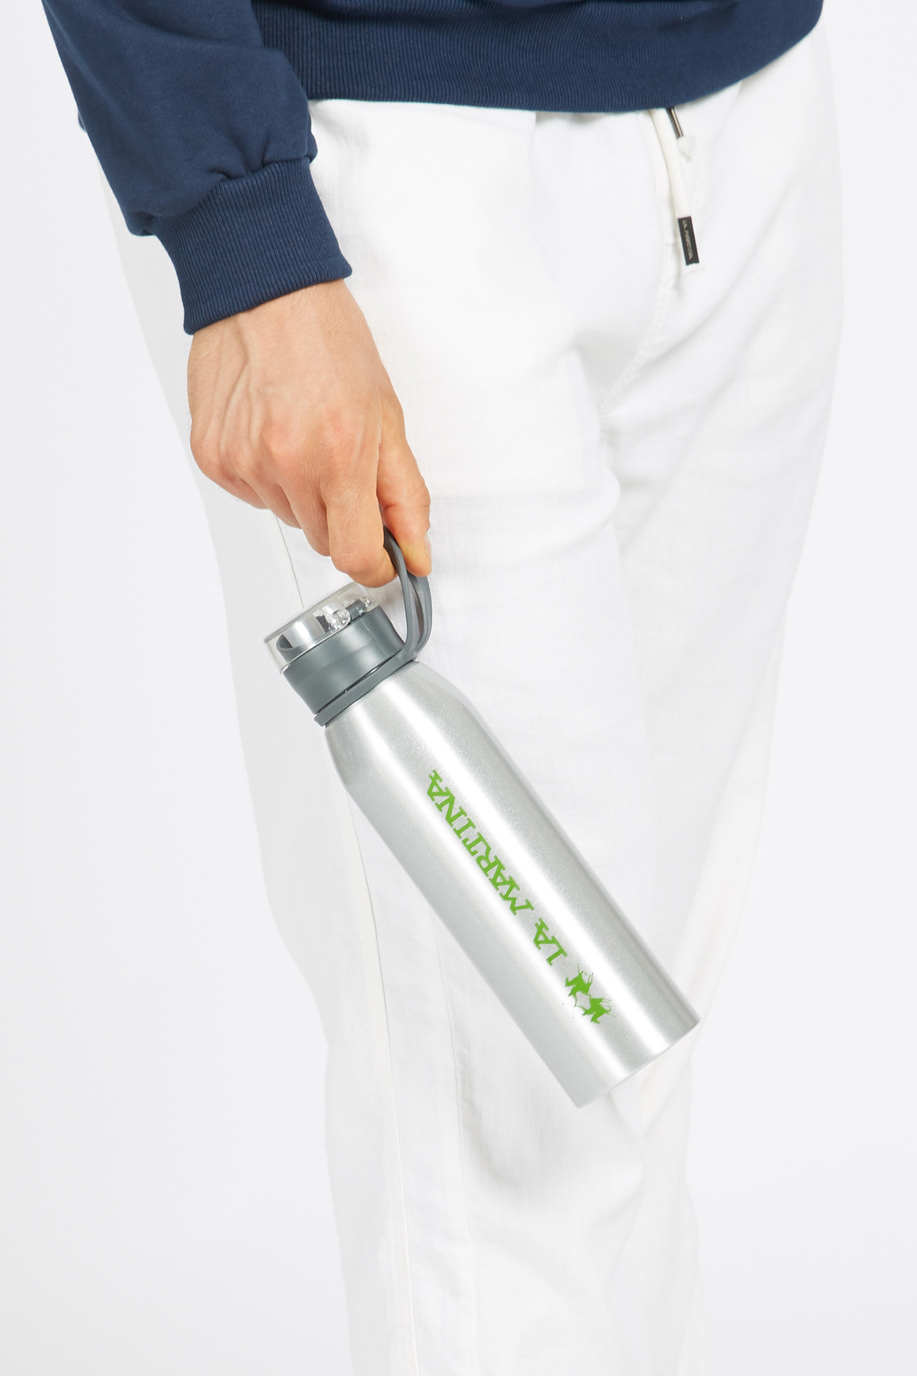 Aluminium-Wasserflasche Unisex mit hermetischem Verschluss und Logo